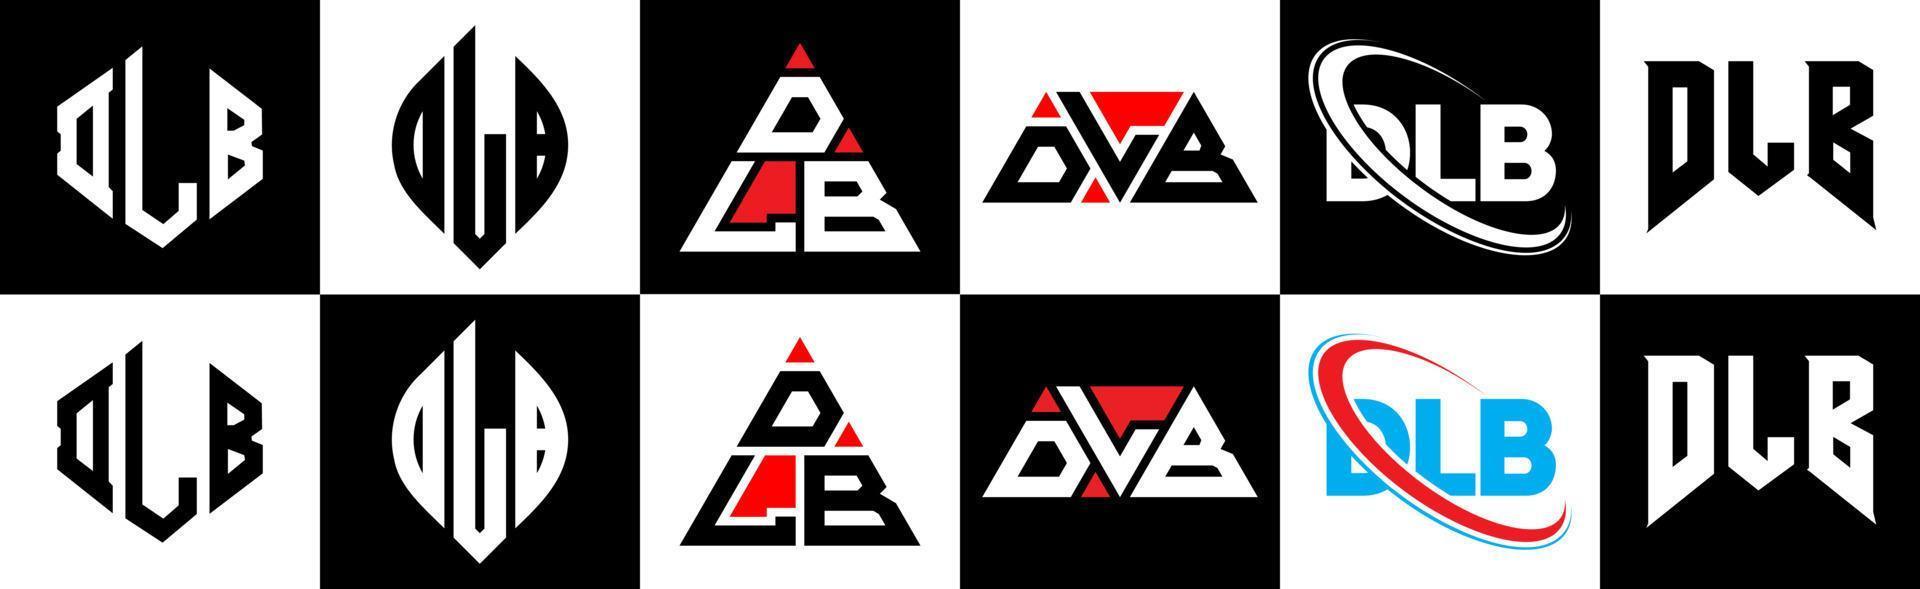 dlb-Buchstaben-Logo-Design in sechs Stilen. dlb-Polygon, Kreis, Dreieck, Sechseck, flacher und einfacher Stil mit schwarz-weißem Buchstabenlogo in einer Zeichenfläche. dlb minimalistisches und klassisches Logo vektor